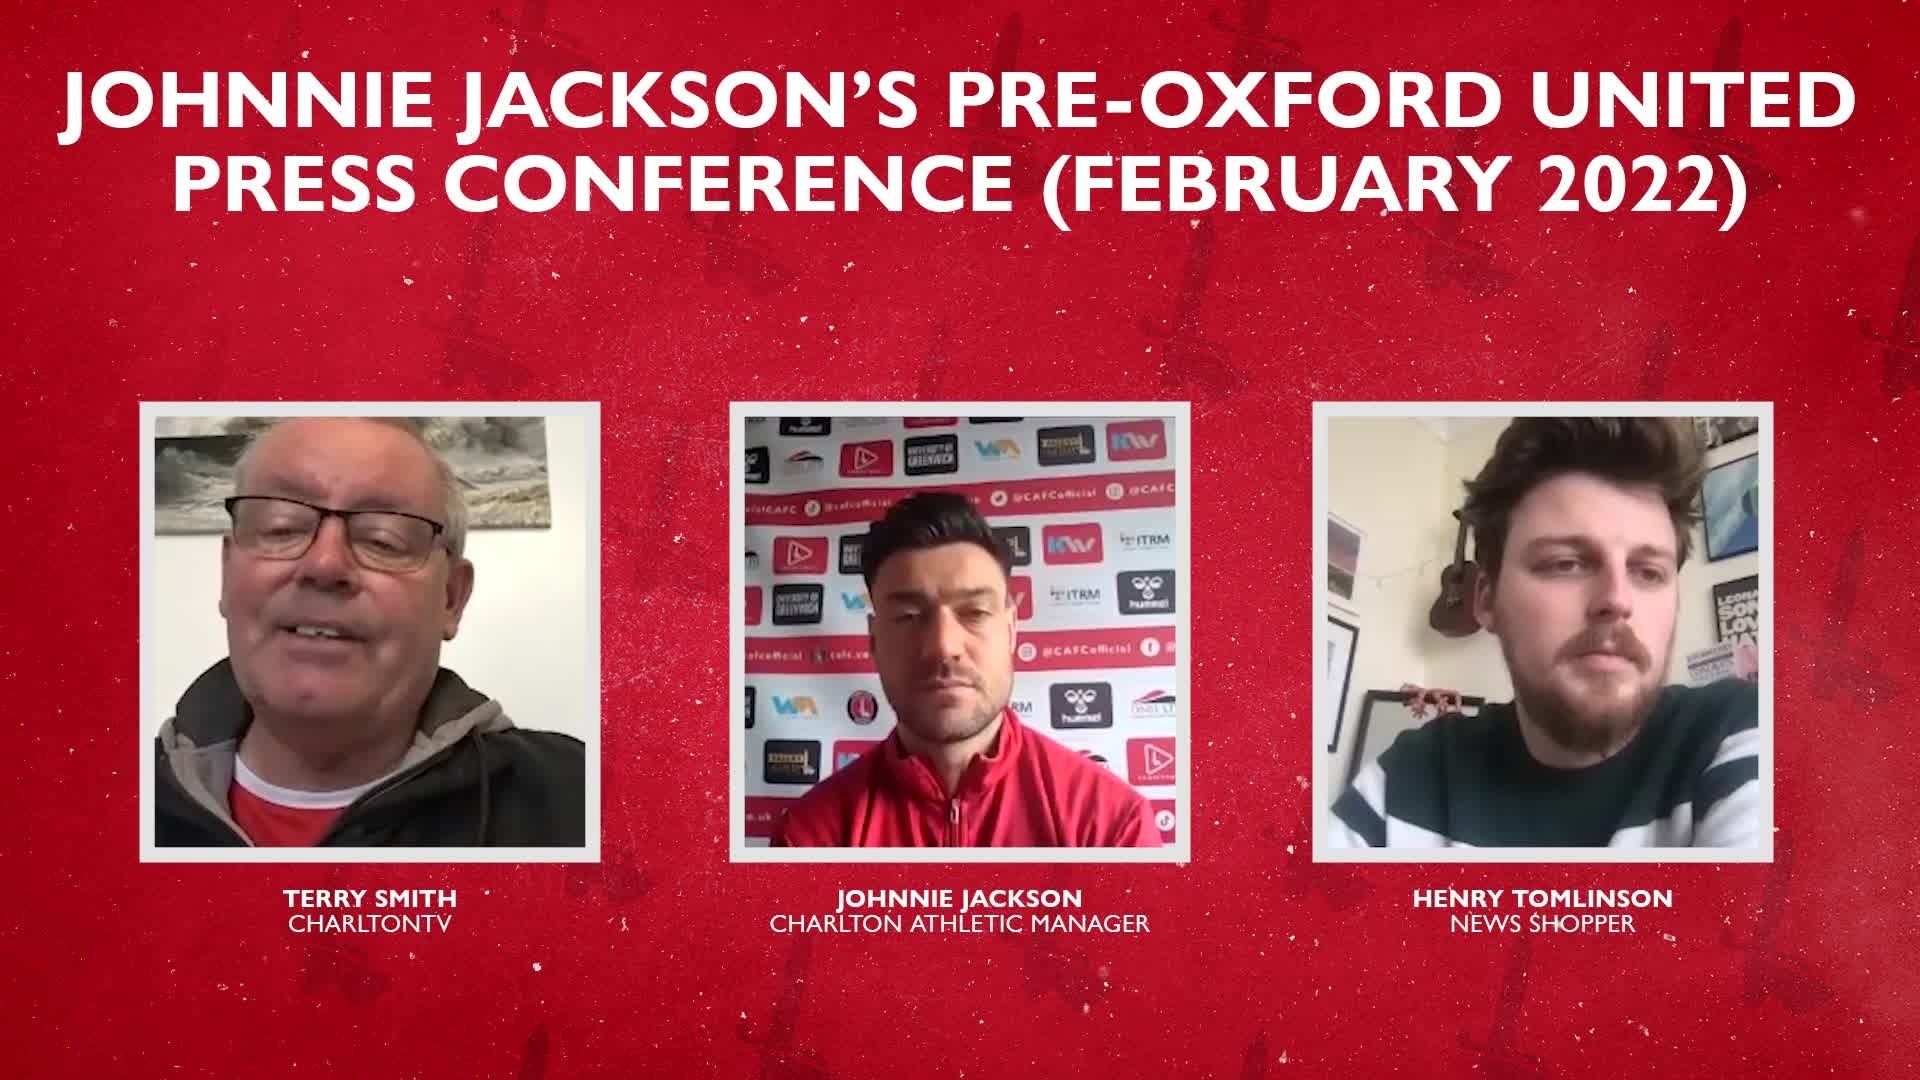 Johnnie Jackson's pre-Oxford press conference (February 2022)